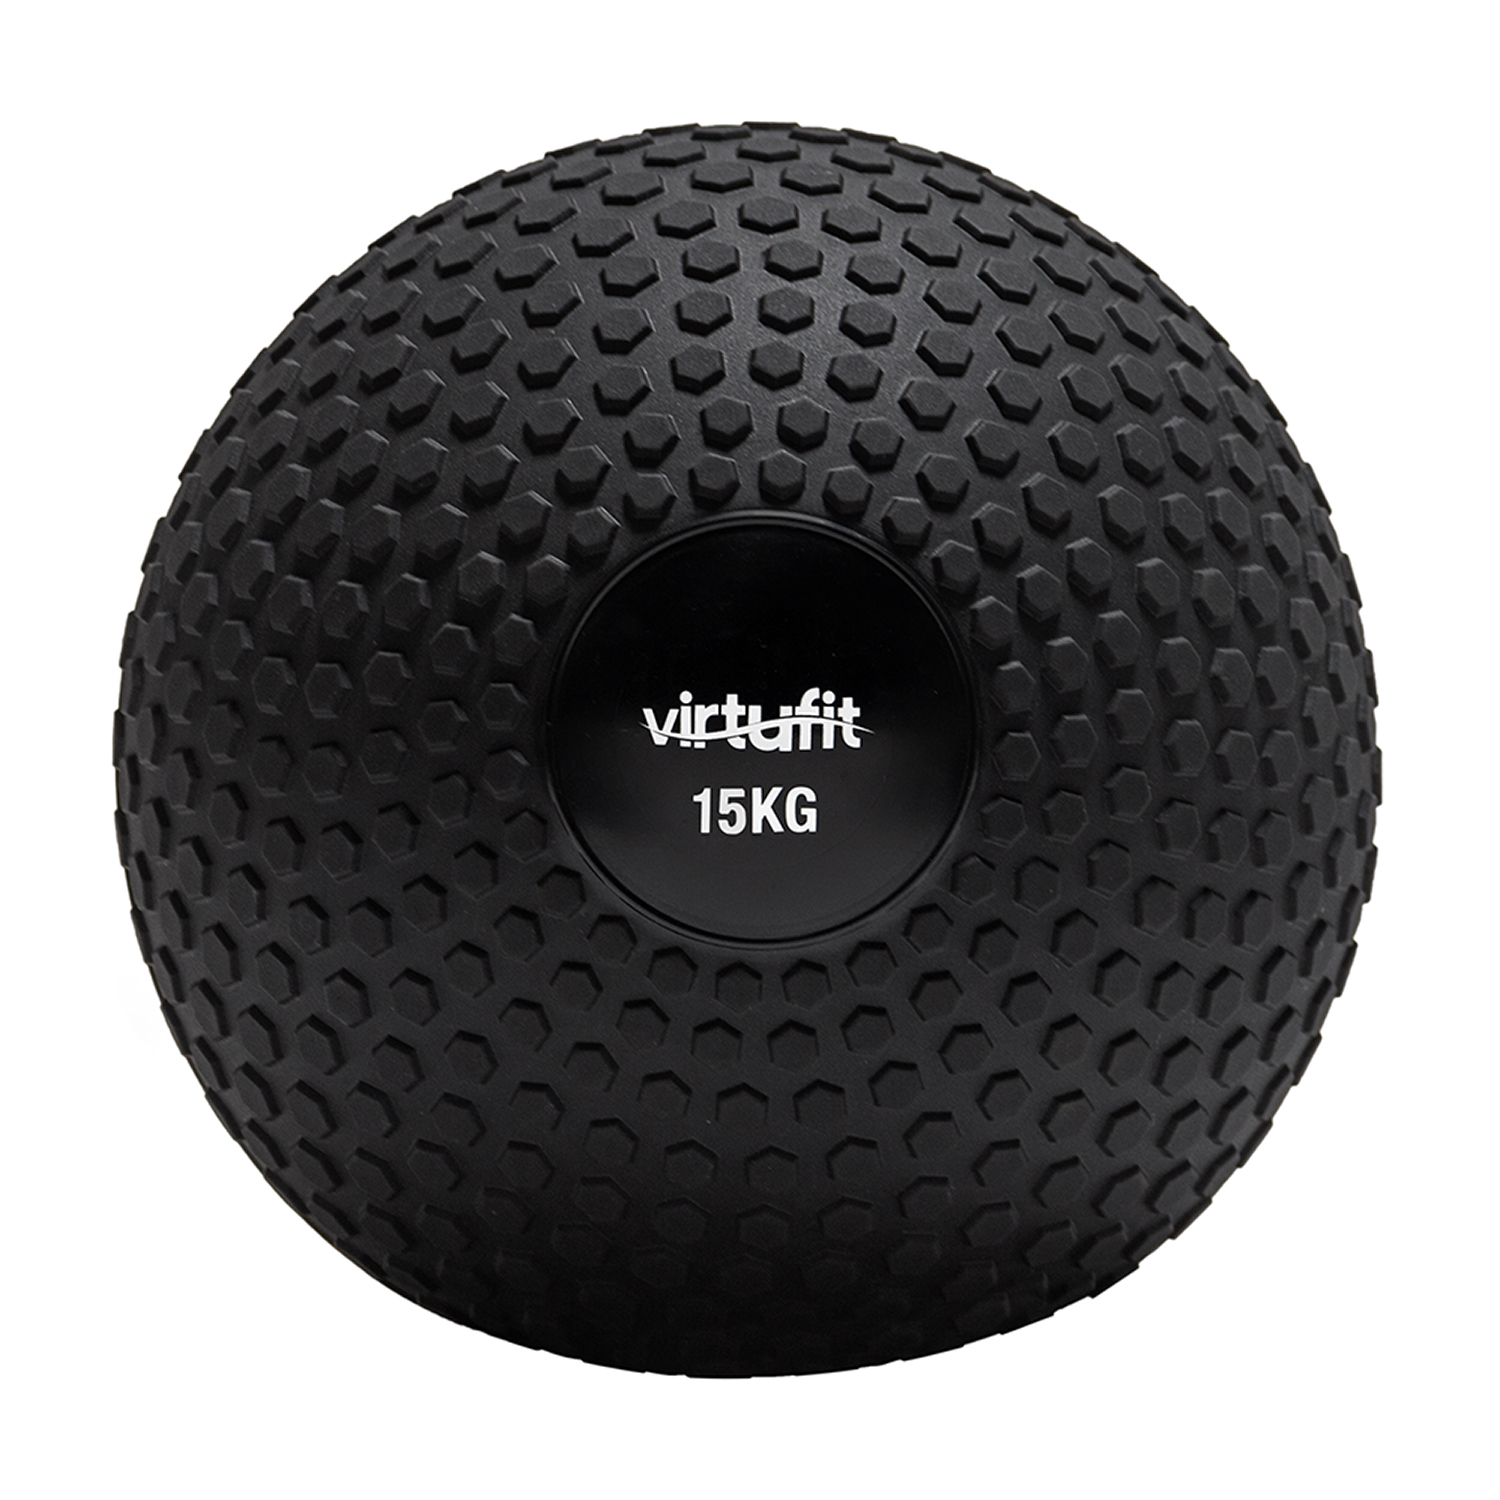 Virtufit Slam Ball – Fitness Bal – 15 kg – Zwart